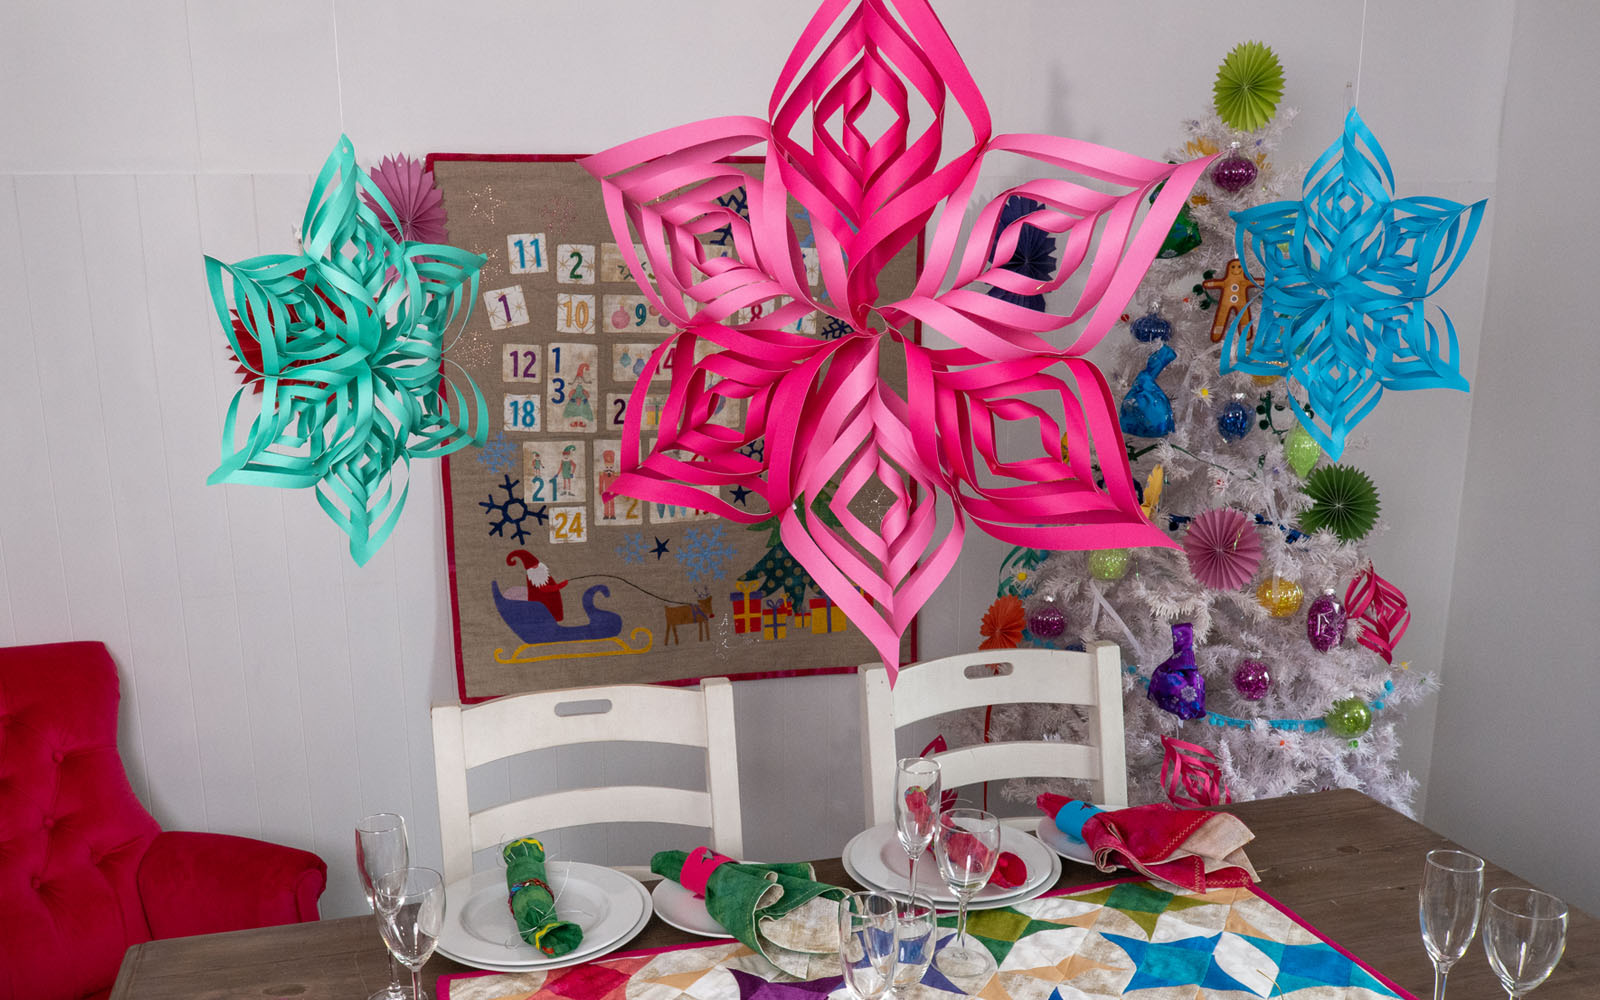 3D papieren sterren hangend boven gedekte tafel